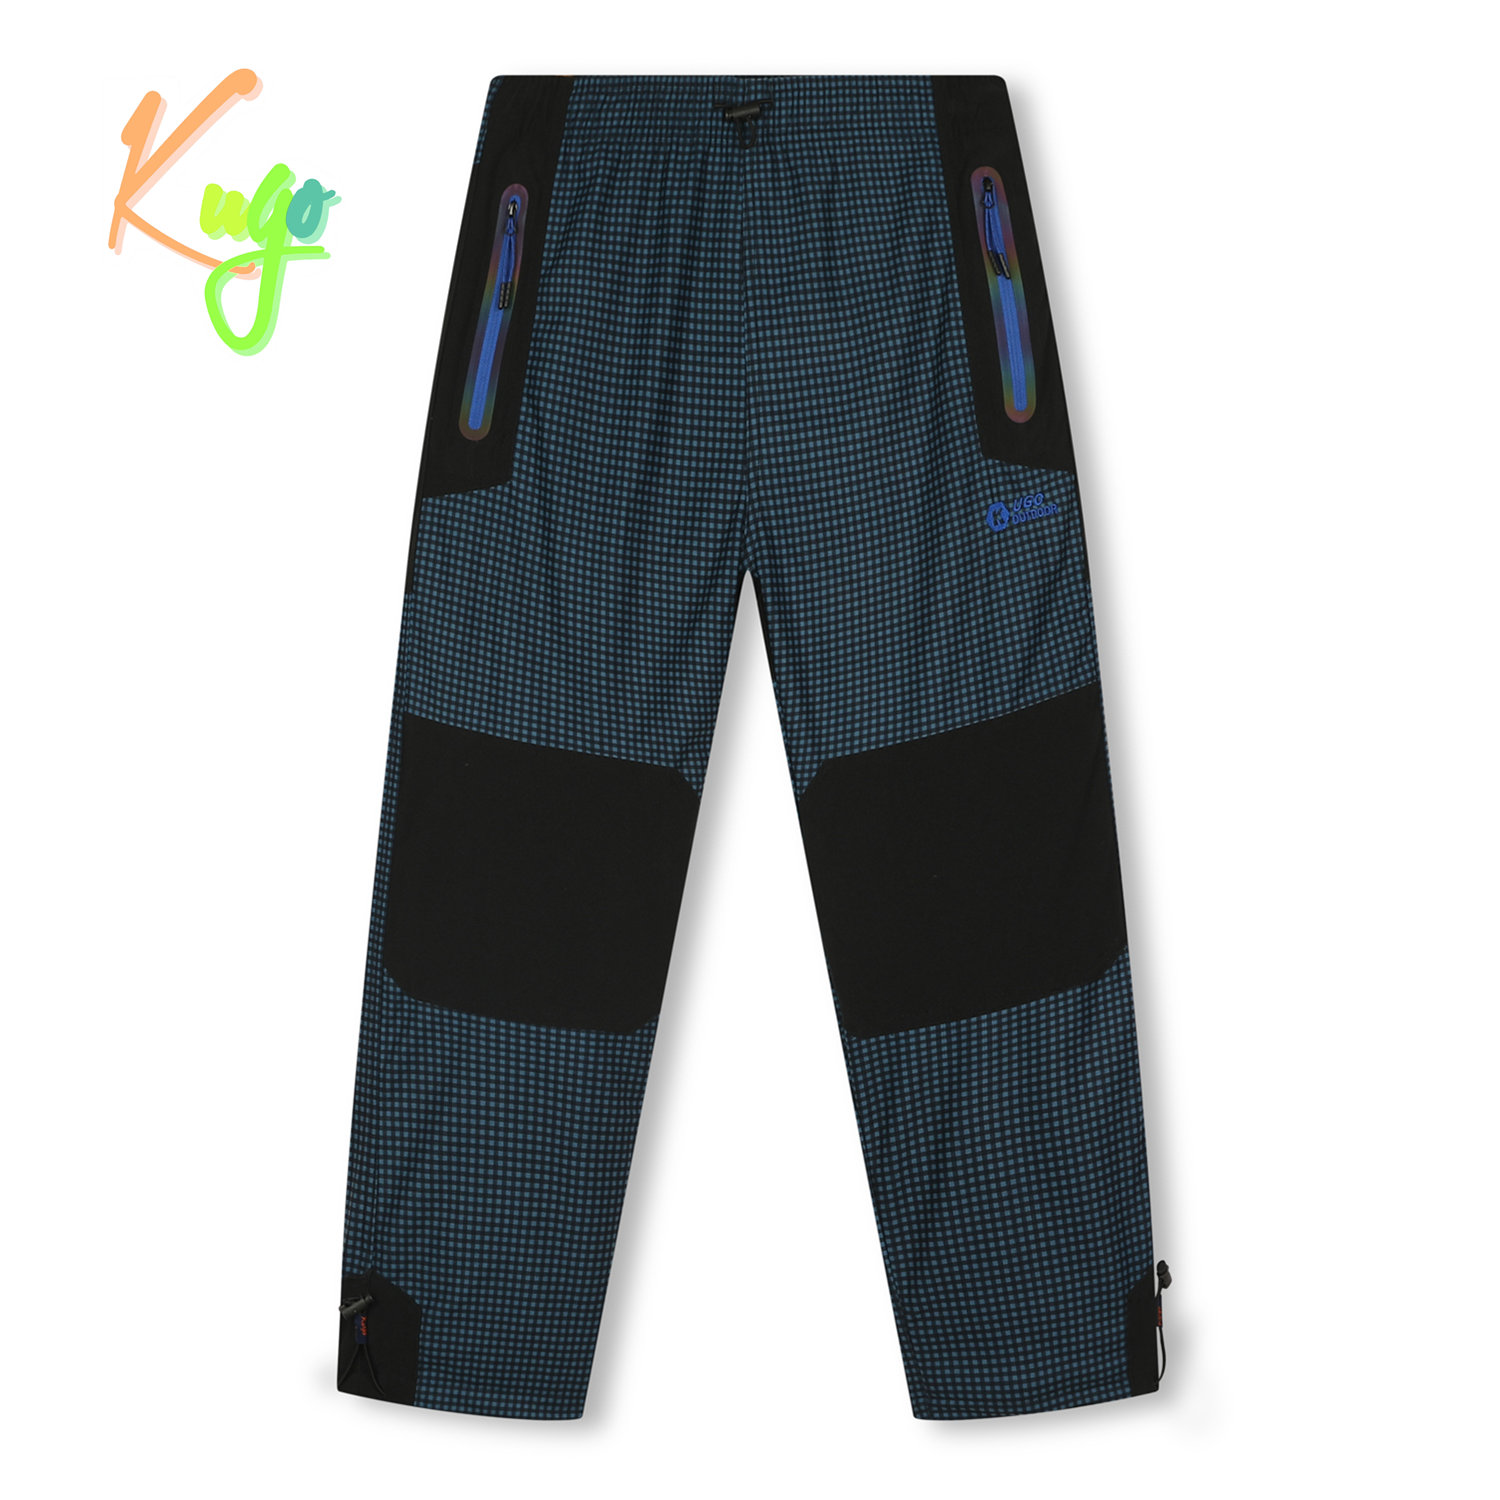 Chlapecké zateplené outdoorové kalhoty - KUGO C7775, petrol/ modré zipy Barva: Petrol, Velikost: 140